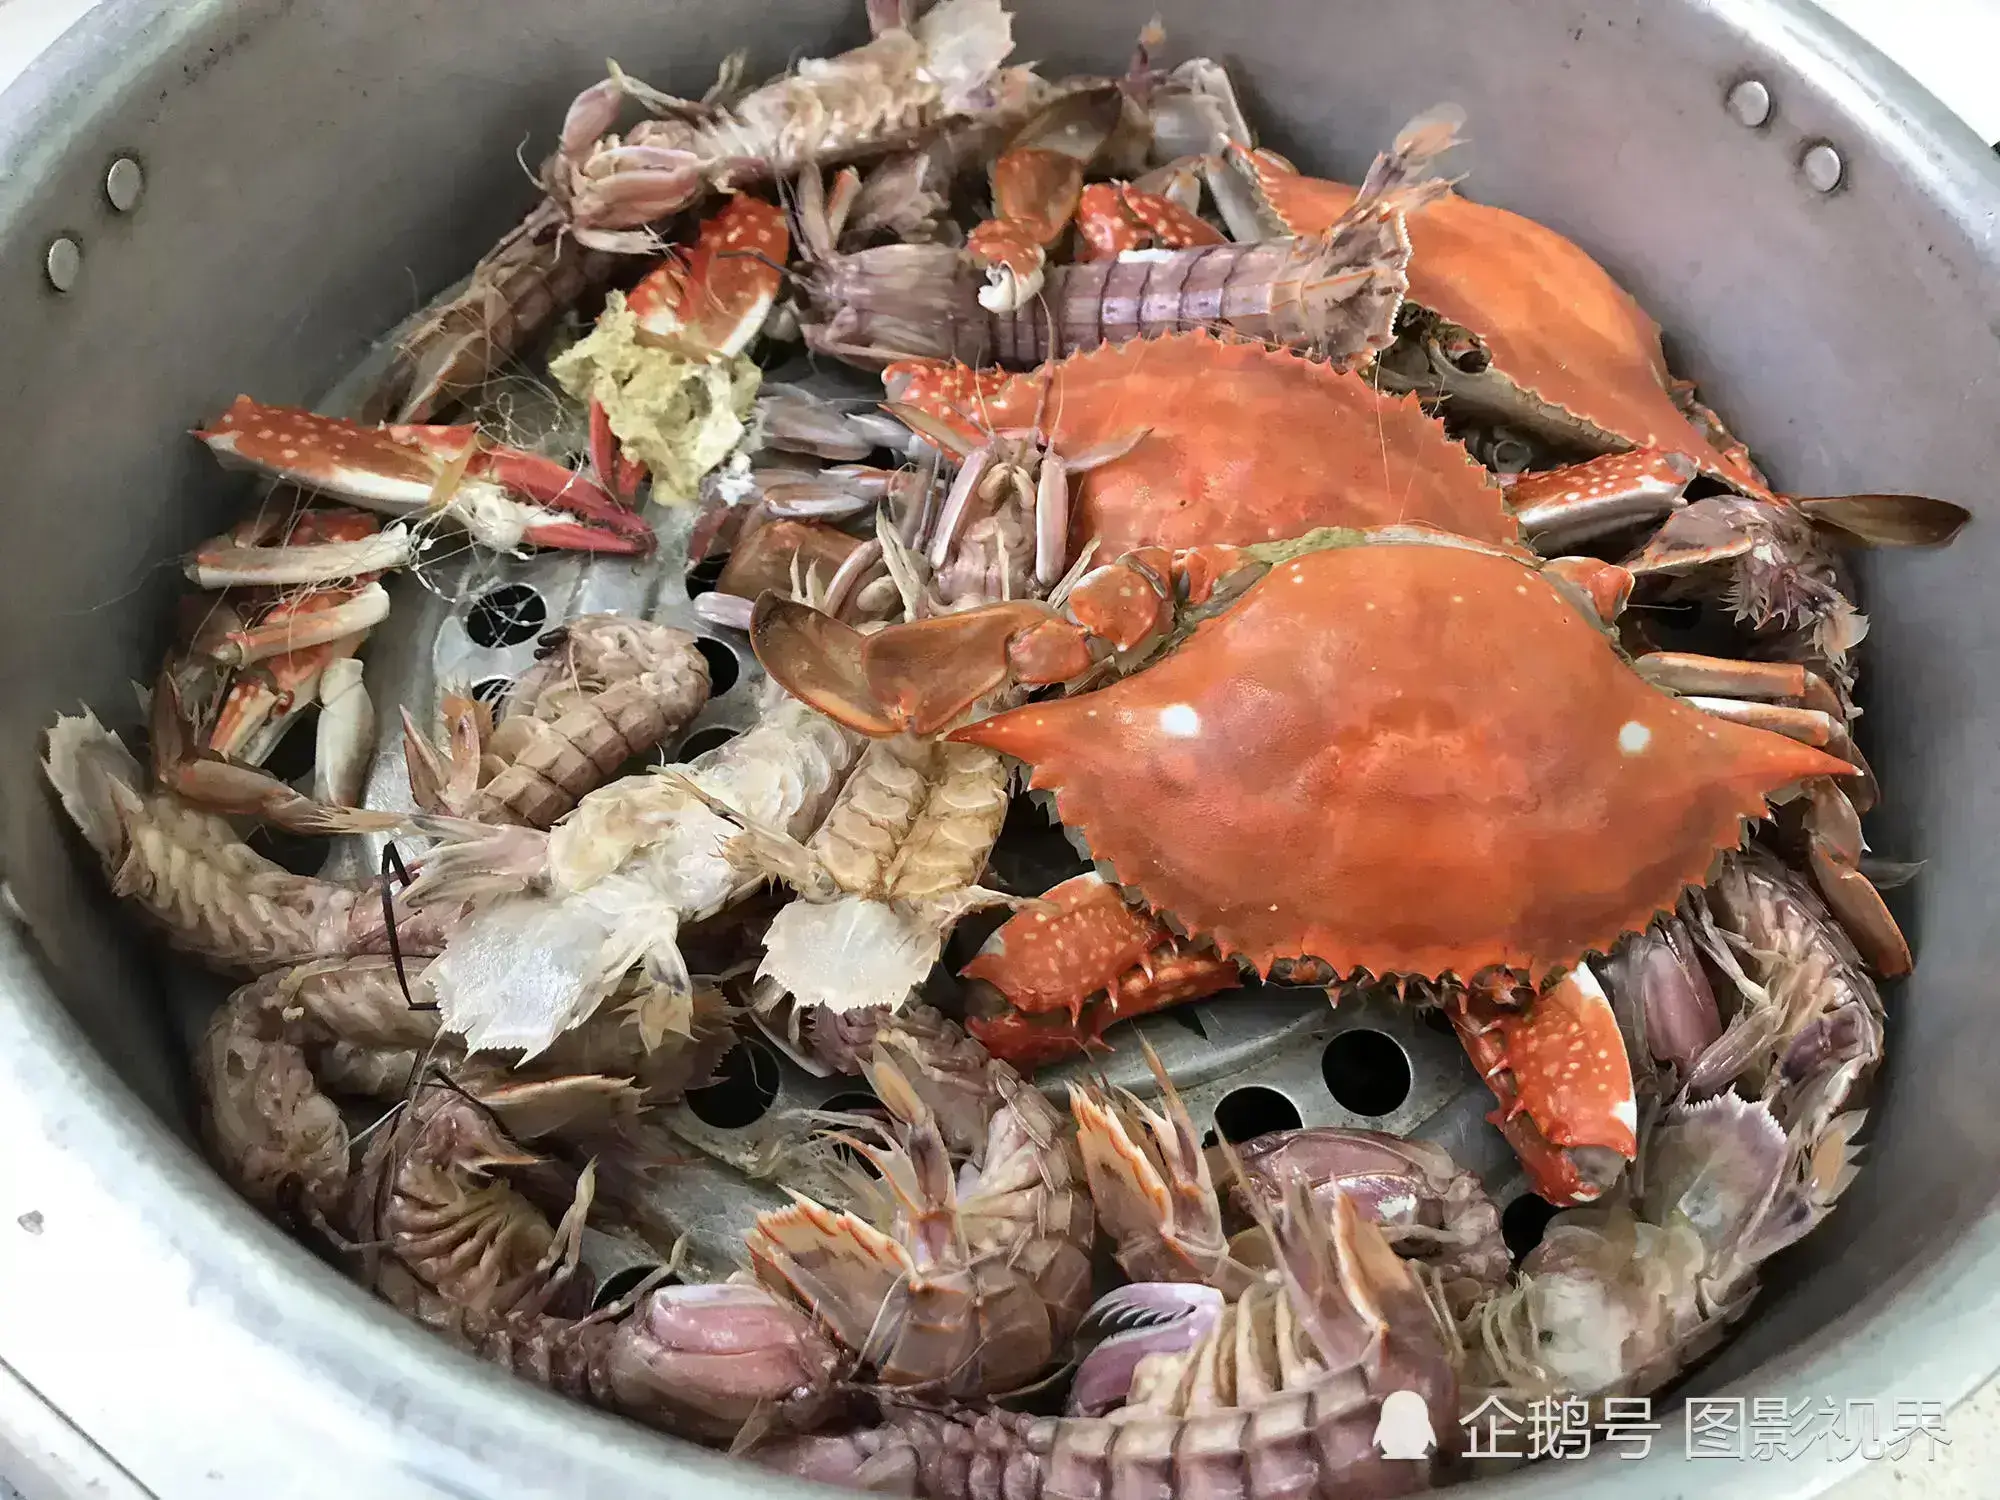 又到了吃海鲜的季节，这份螃蟹、蛏子、皮皮虾等处理技巧大全收好！